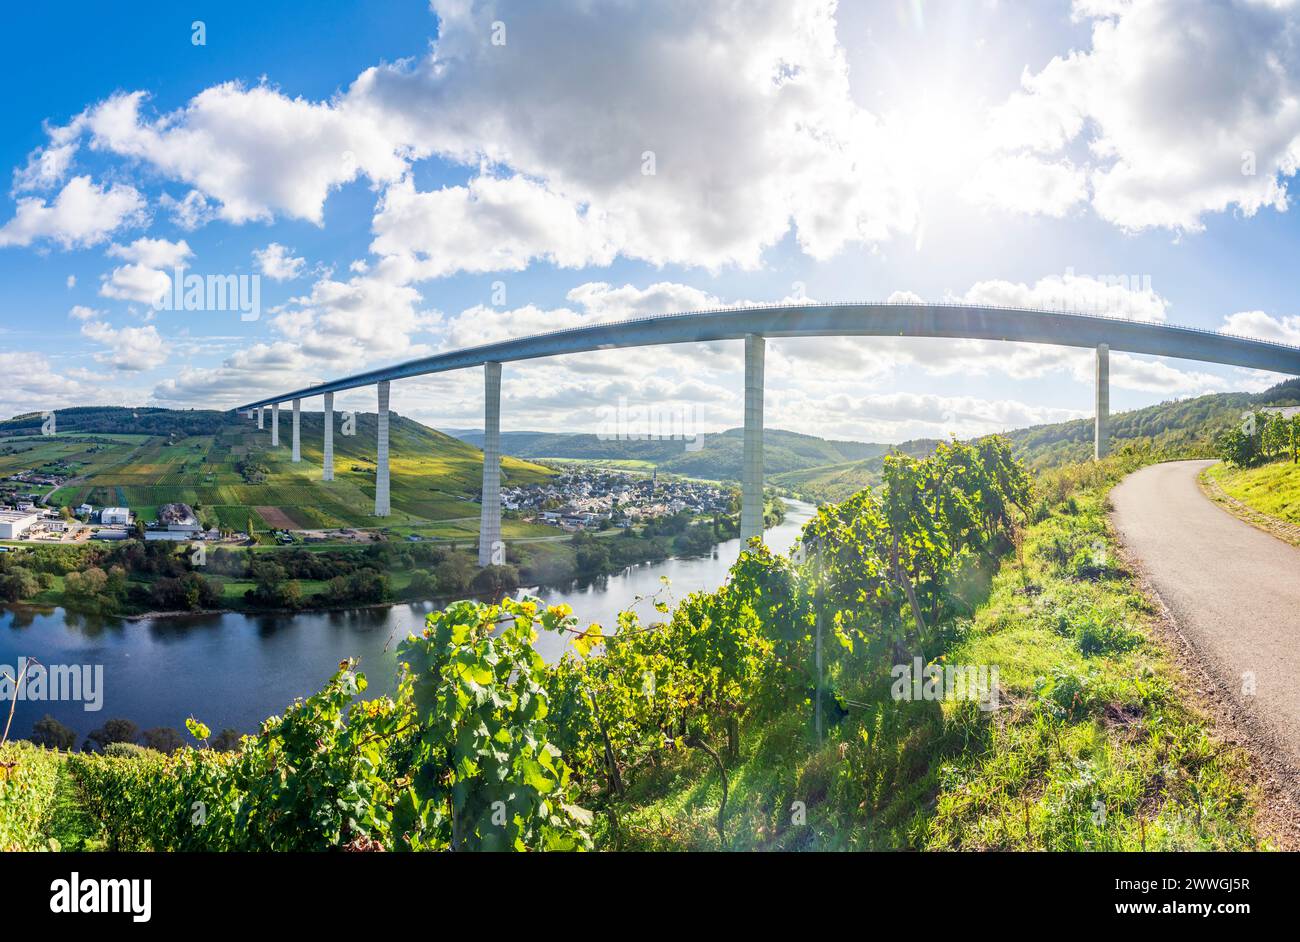 Zeltingen-Rachtig : Hochmoselbrücke (Pont de la haute Moselle), rivière Moselle (Moselle), vignoble, village Zeltingen-Rachtig à Moselle, Rhénanie-Palatinat, Rhinel Banque D'Images